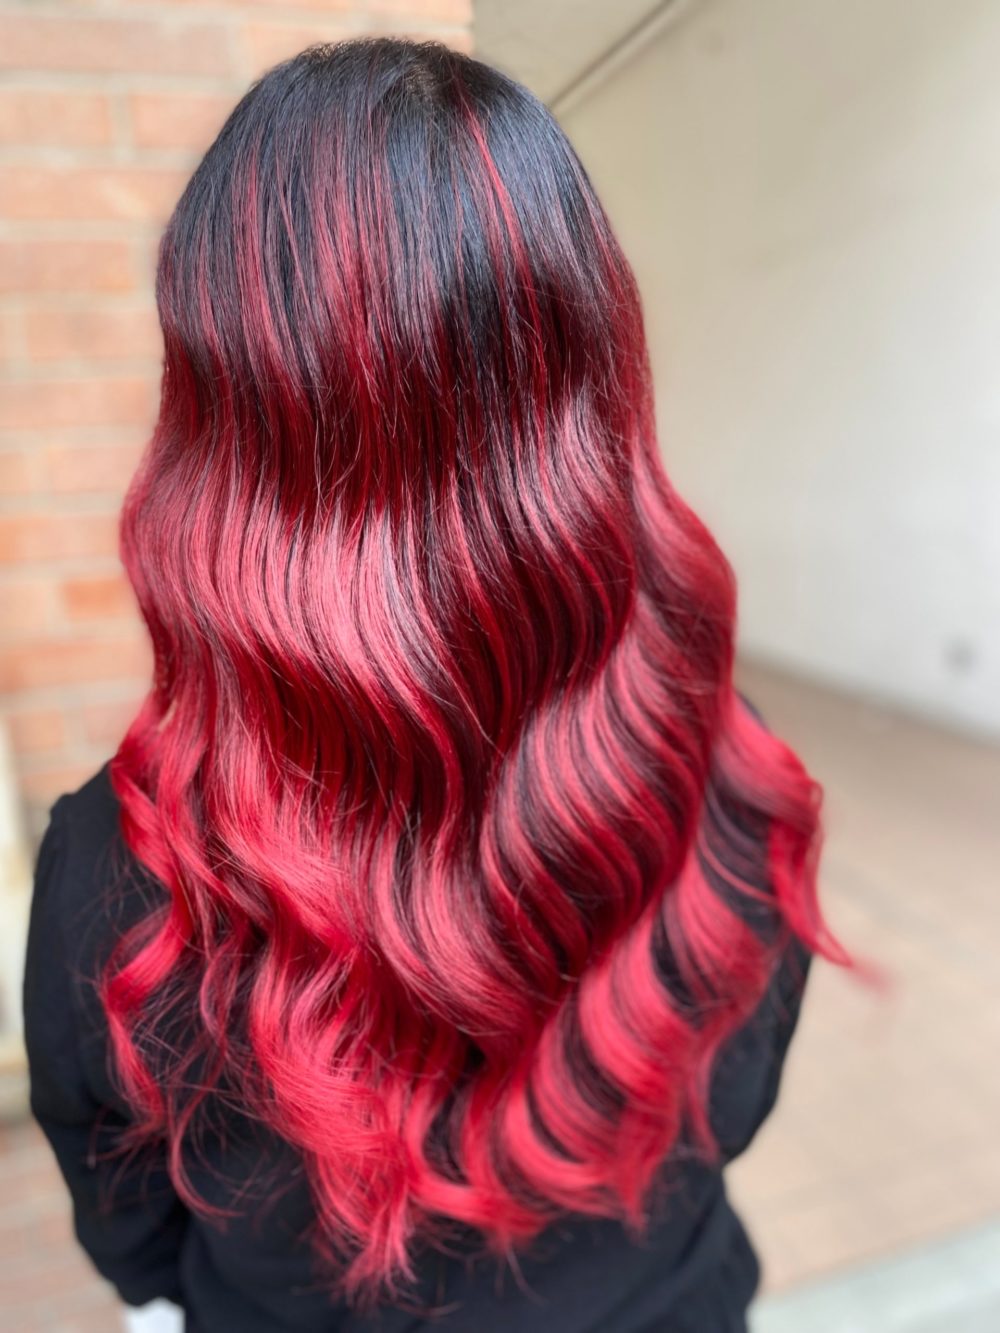 bloem Ontkennen overstroming 20 Flatterende rode highlights om je kleur een boost te geven - Dutch  Hairshop